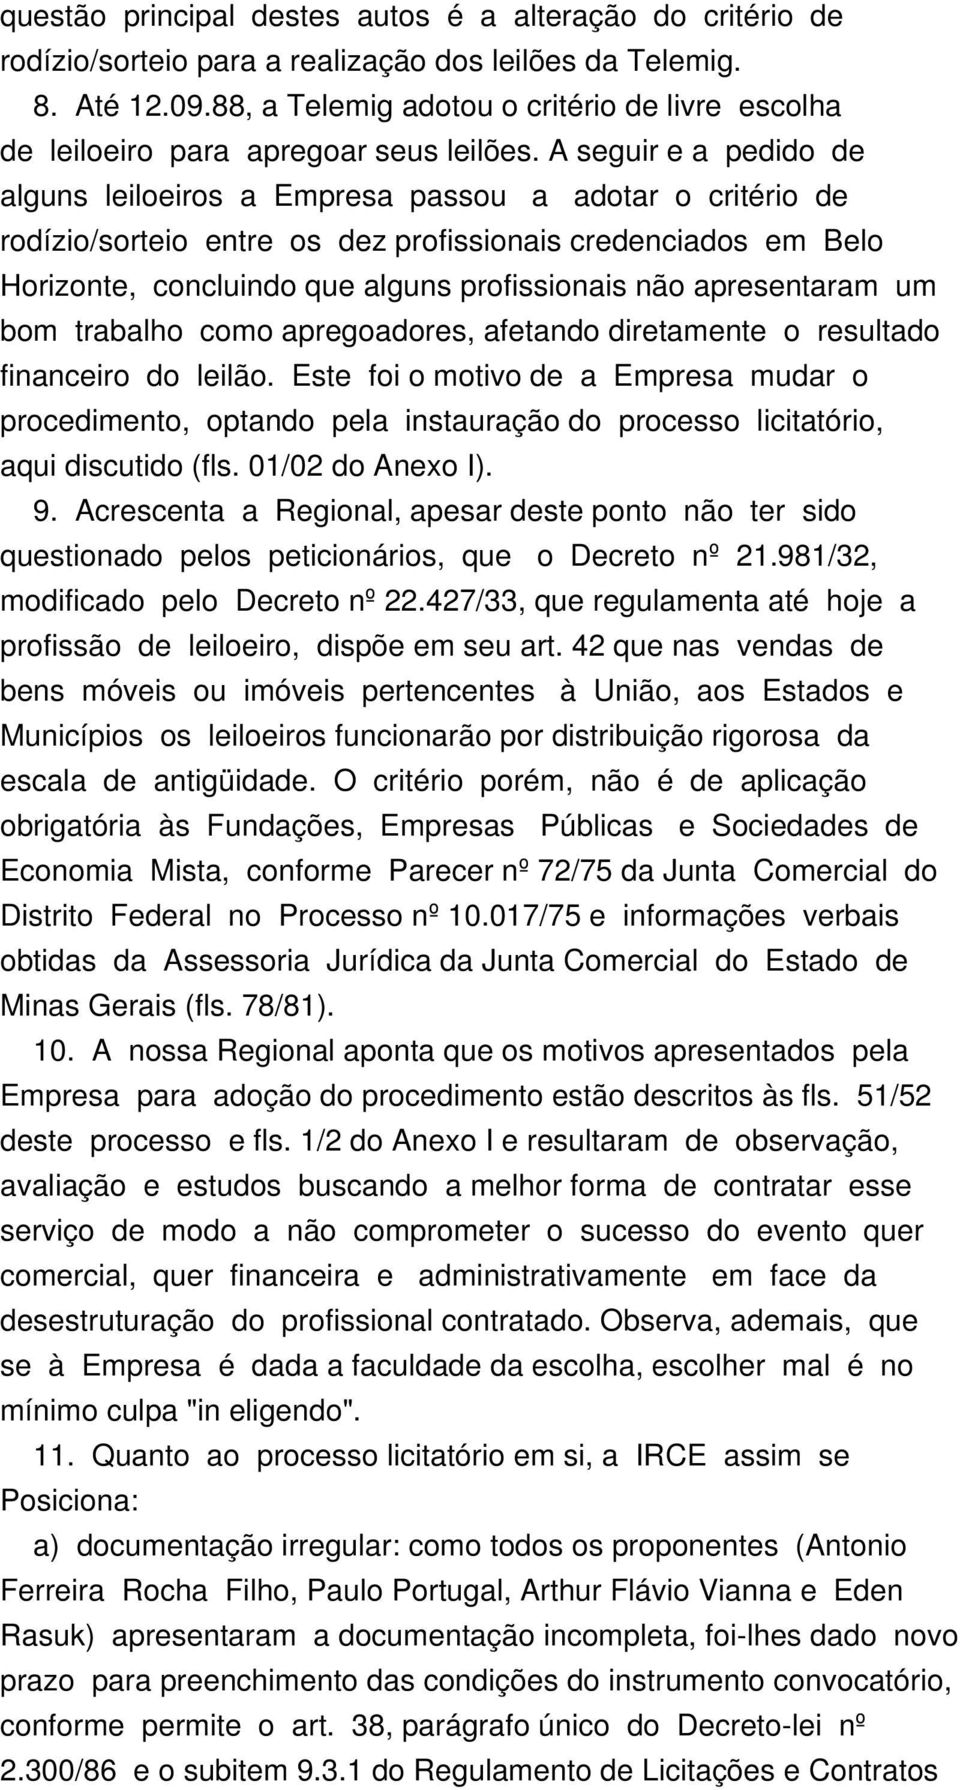 A seguir e a pedido de alguns leiloeiros a Empresa passou a adotar o critério de rodízio/sorteio entre os dez profissionais credenciados em Belo Horizonte, concluindo que alguns profissionais não